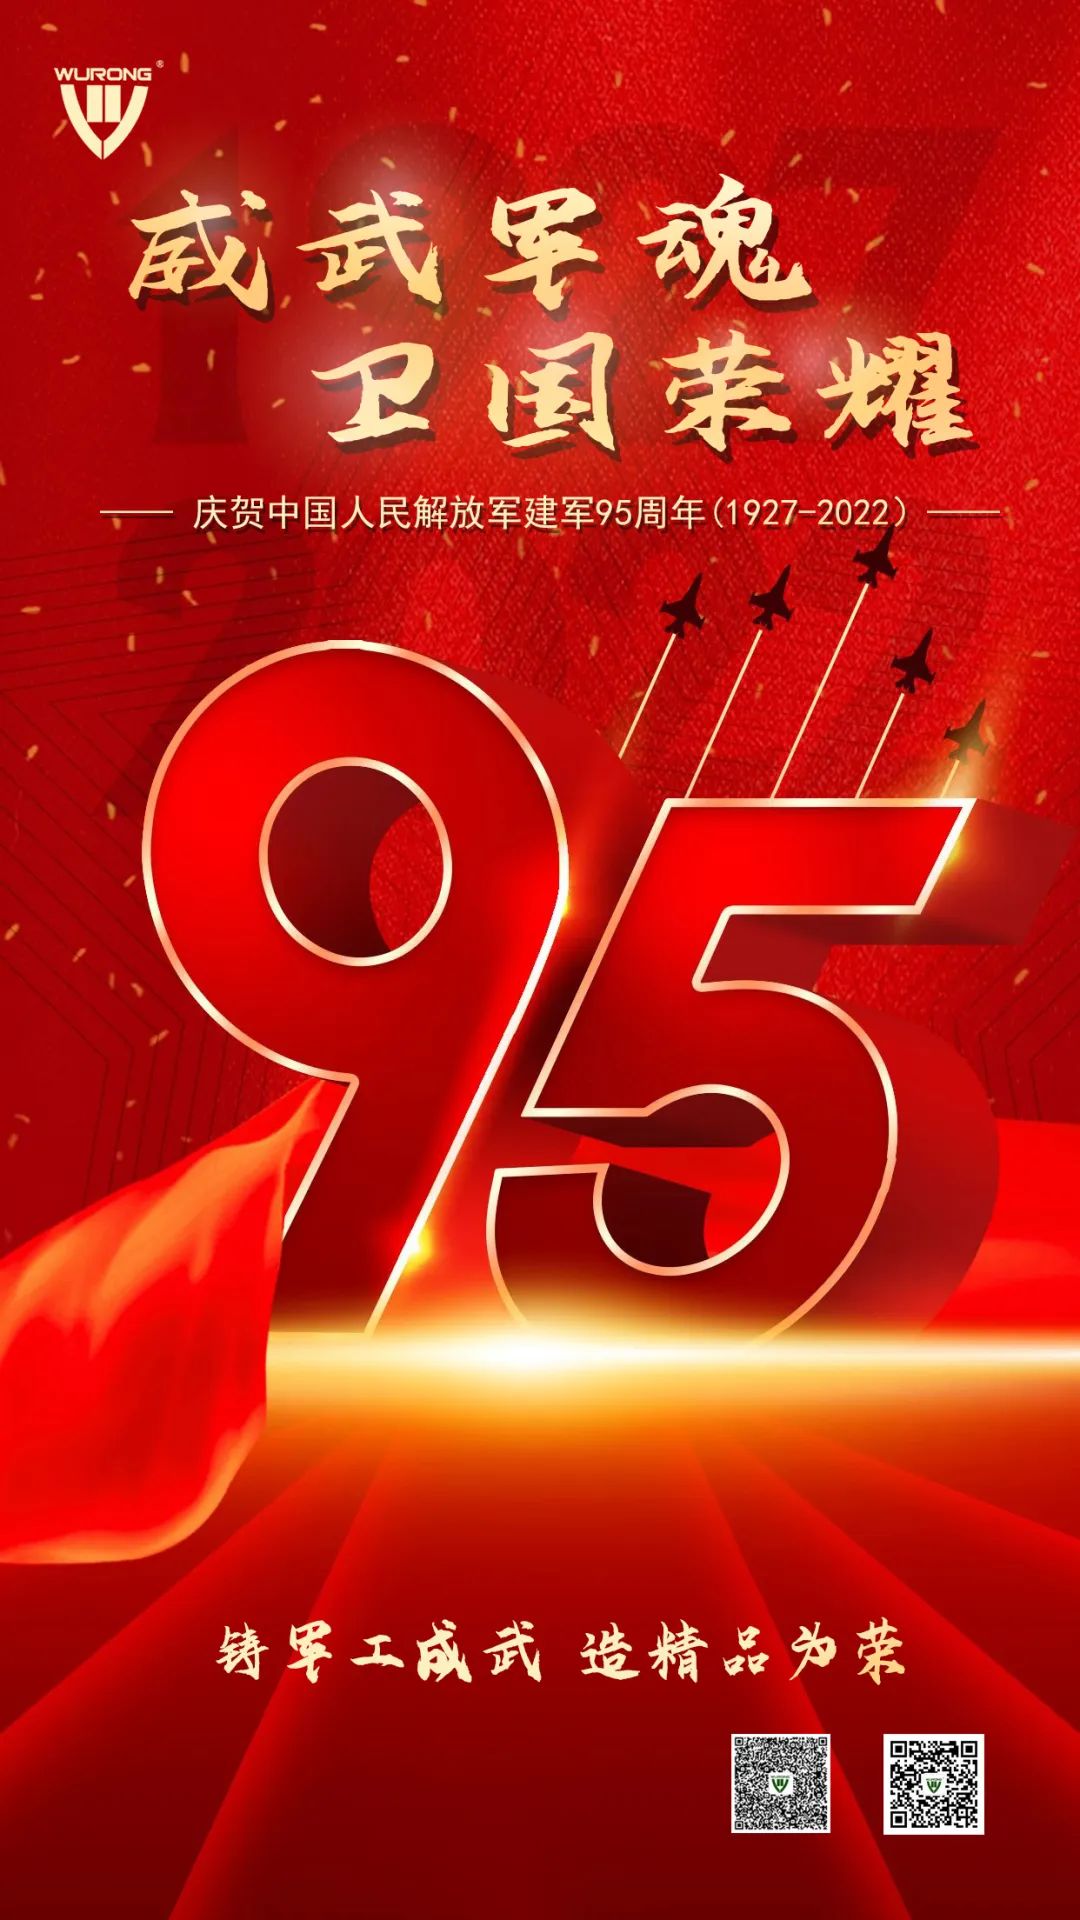 威武軍魂 衛國榮耀——熱烈慶祝中國人民解放軍建軍95周年！